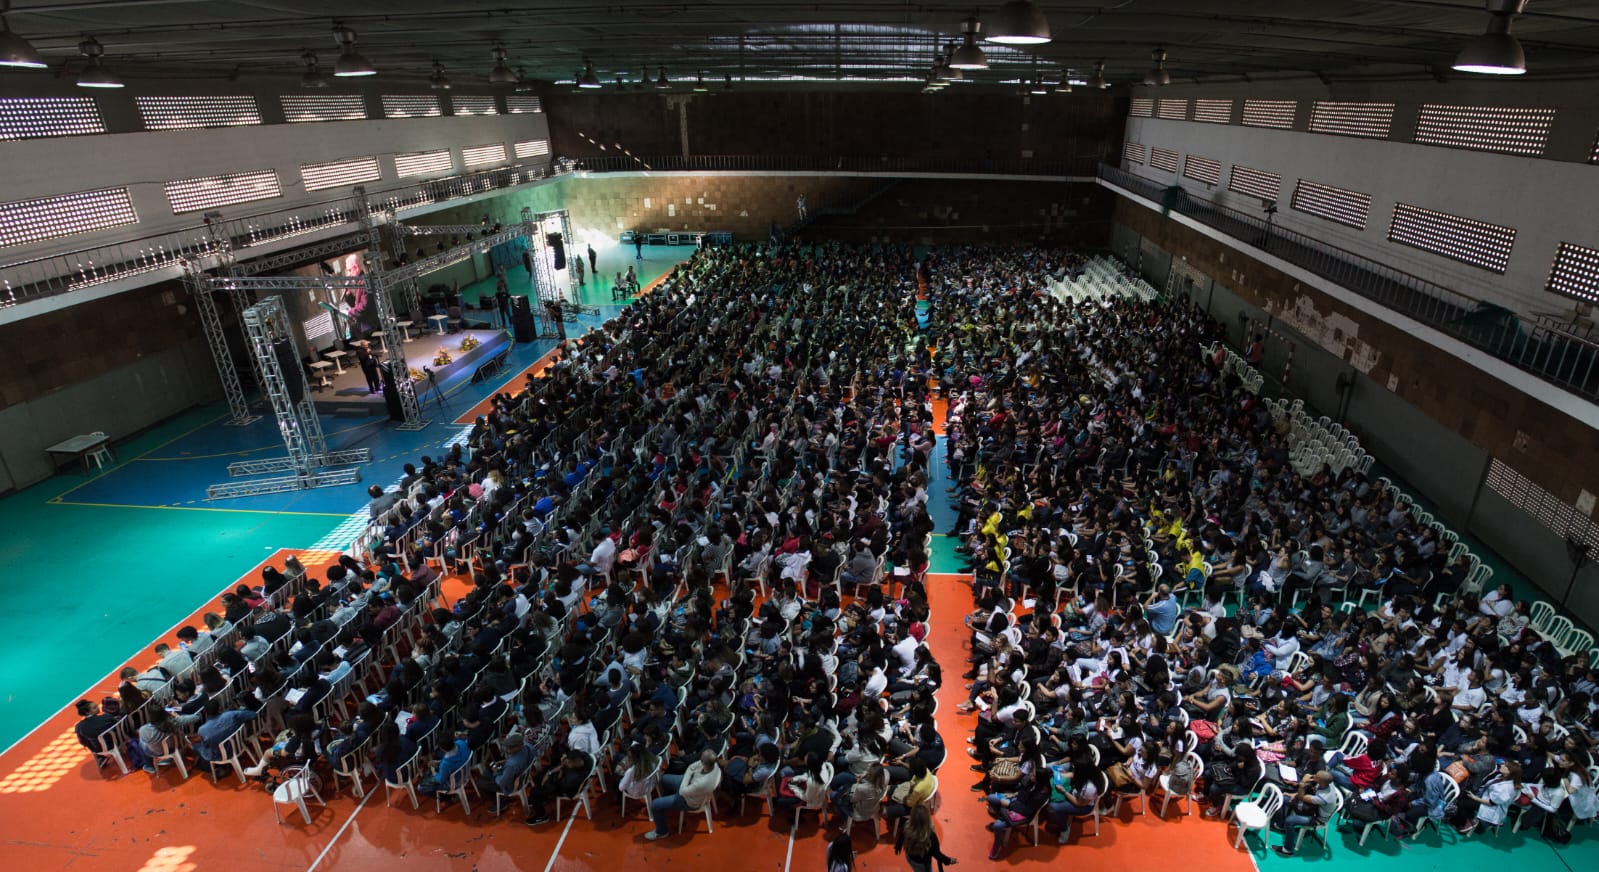 Fotografia de um grande auditório lotado, com pessoas sentadas em cadeiras enfileiradas em frente a um palco.